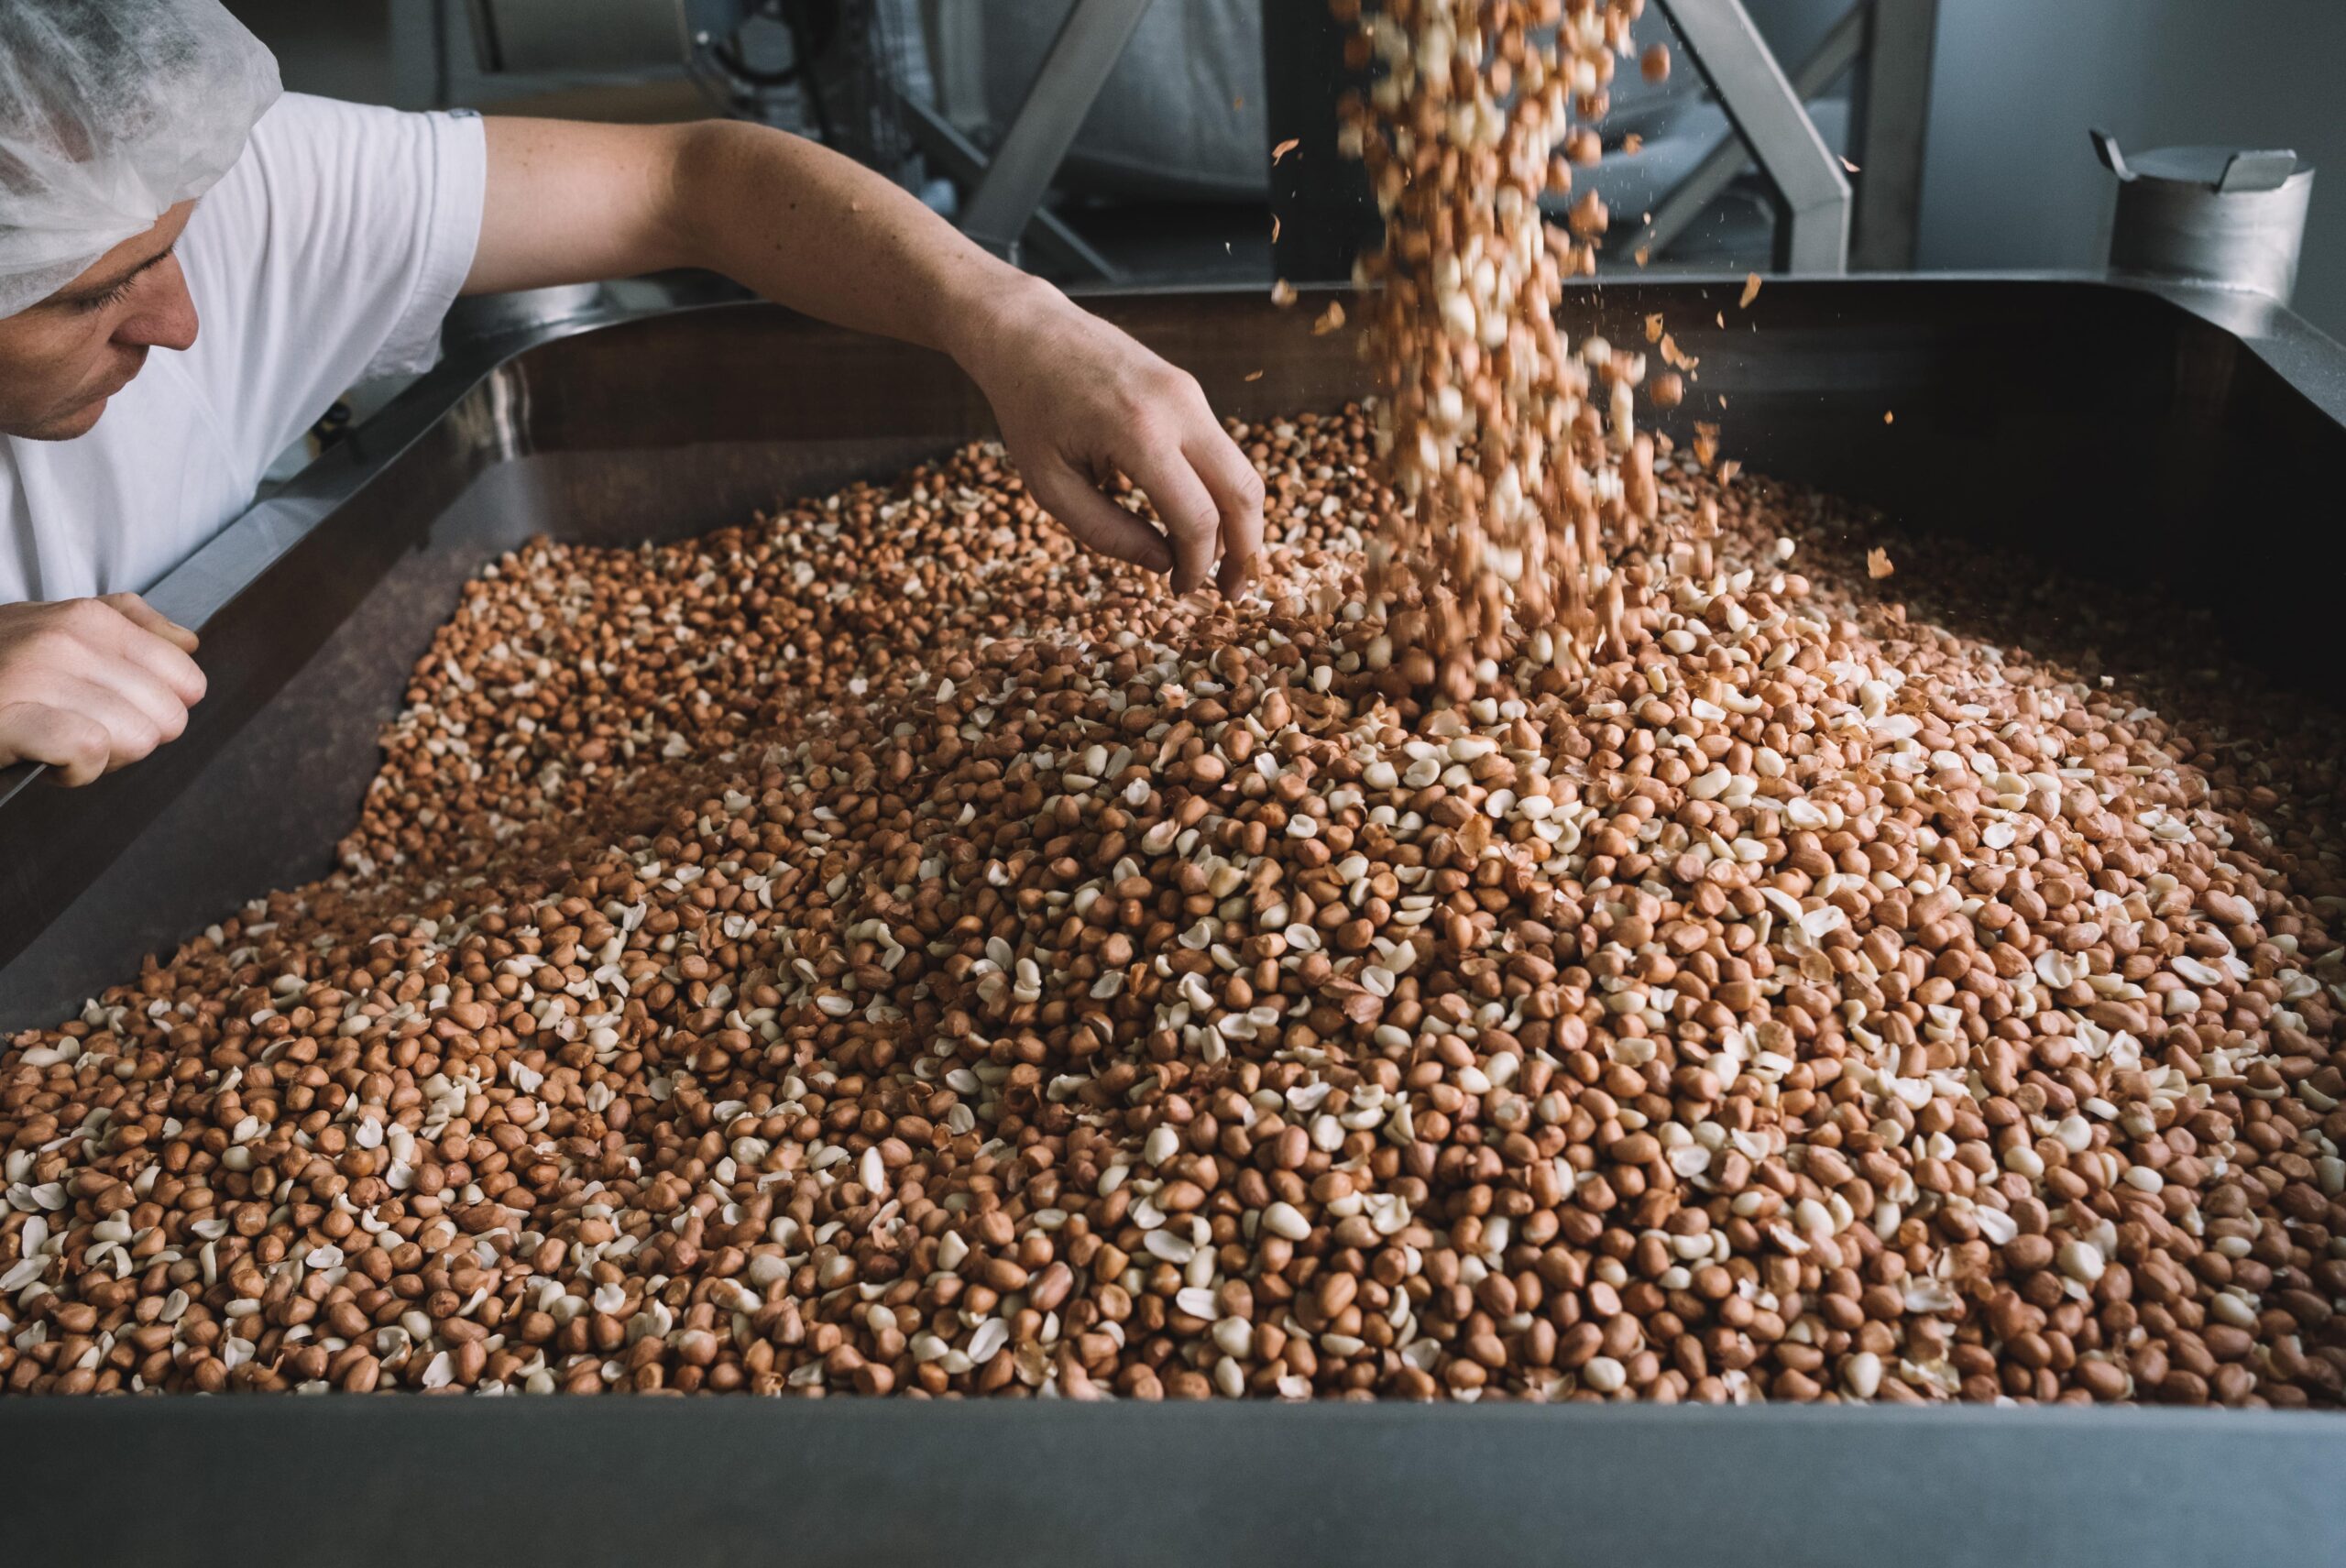 Wir pressen Samen und Nüsse schonend zu hochwertigem Öle. Wir arbeiten mit Leidenschaft und Sorgfalt an unserer Ölherstellung